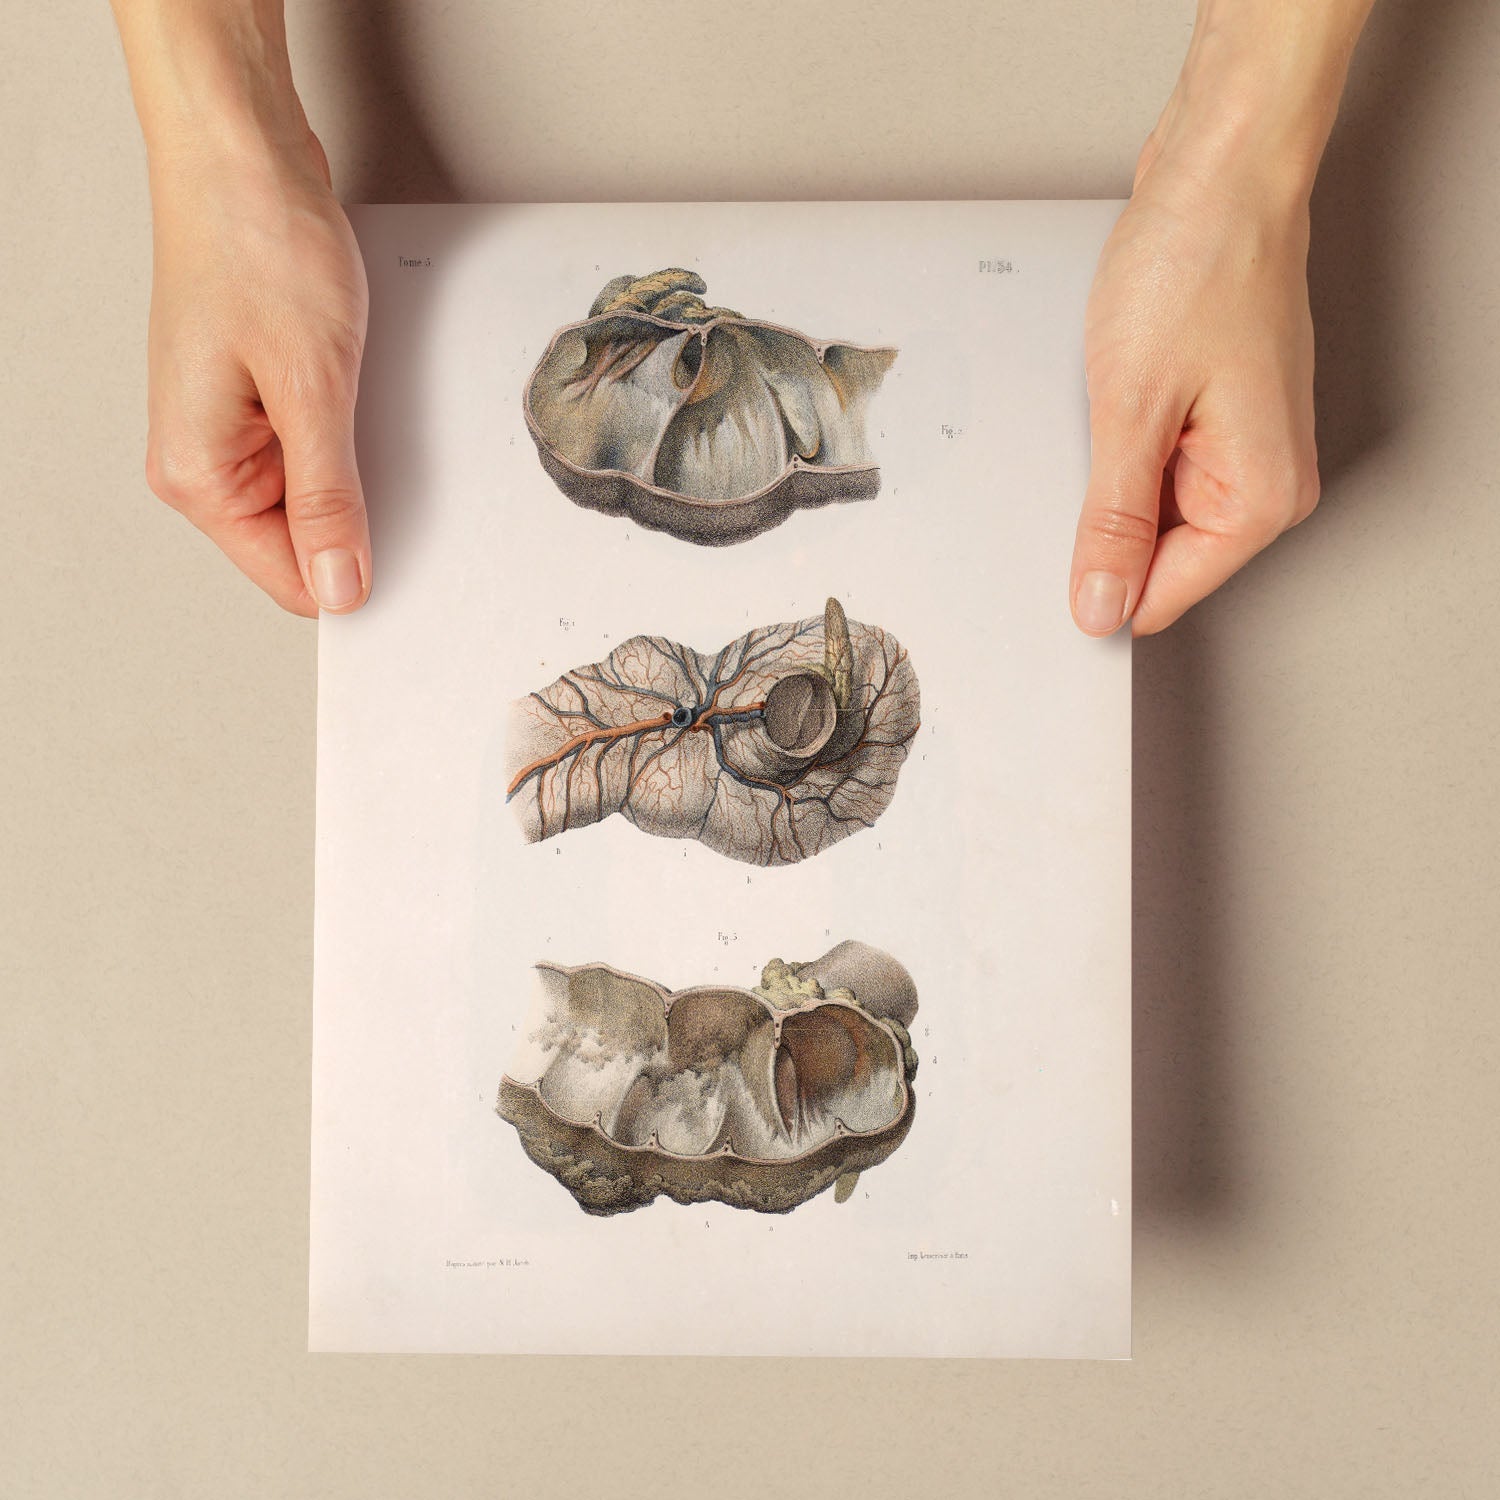 Large intestine; cecum and appendix-Artwork-Nacnic-Nacnic Estudio SL